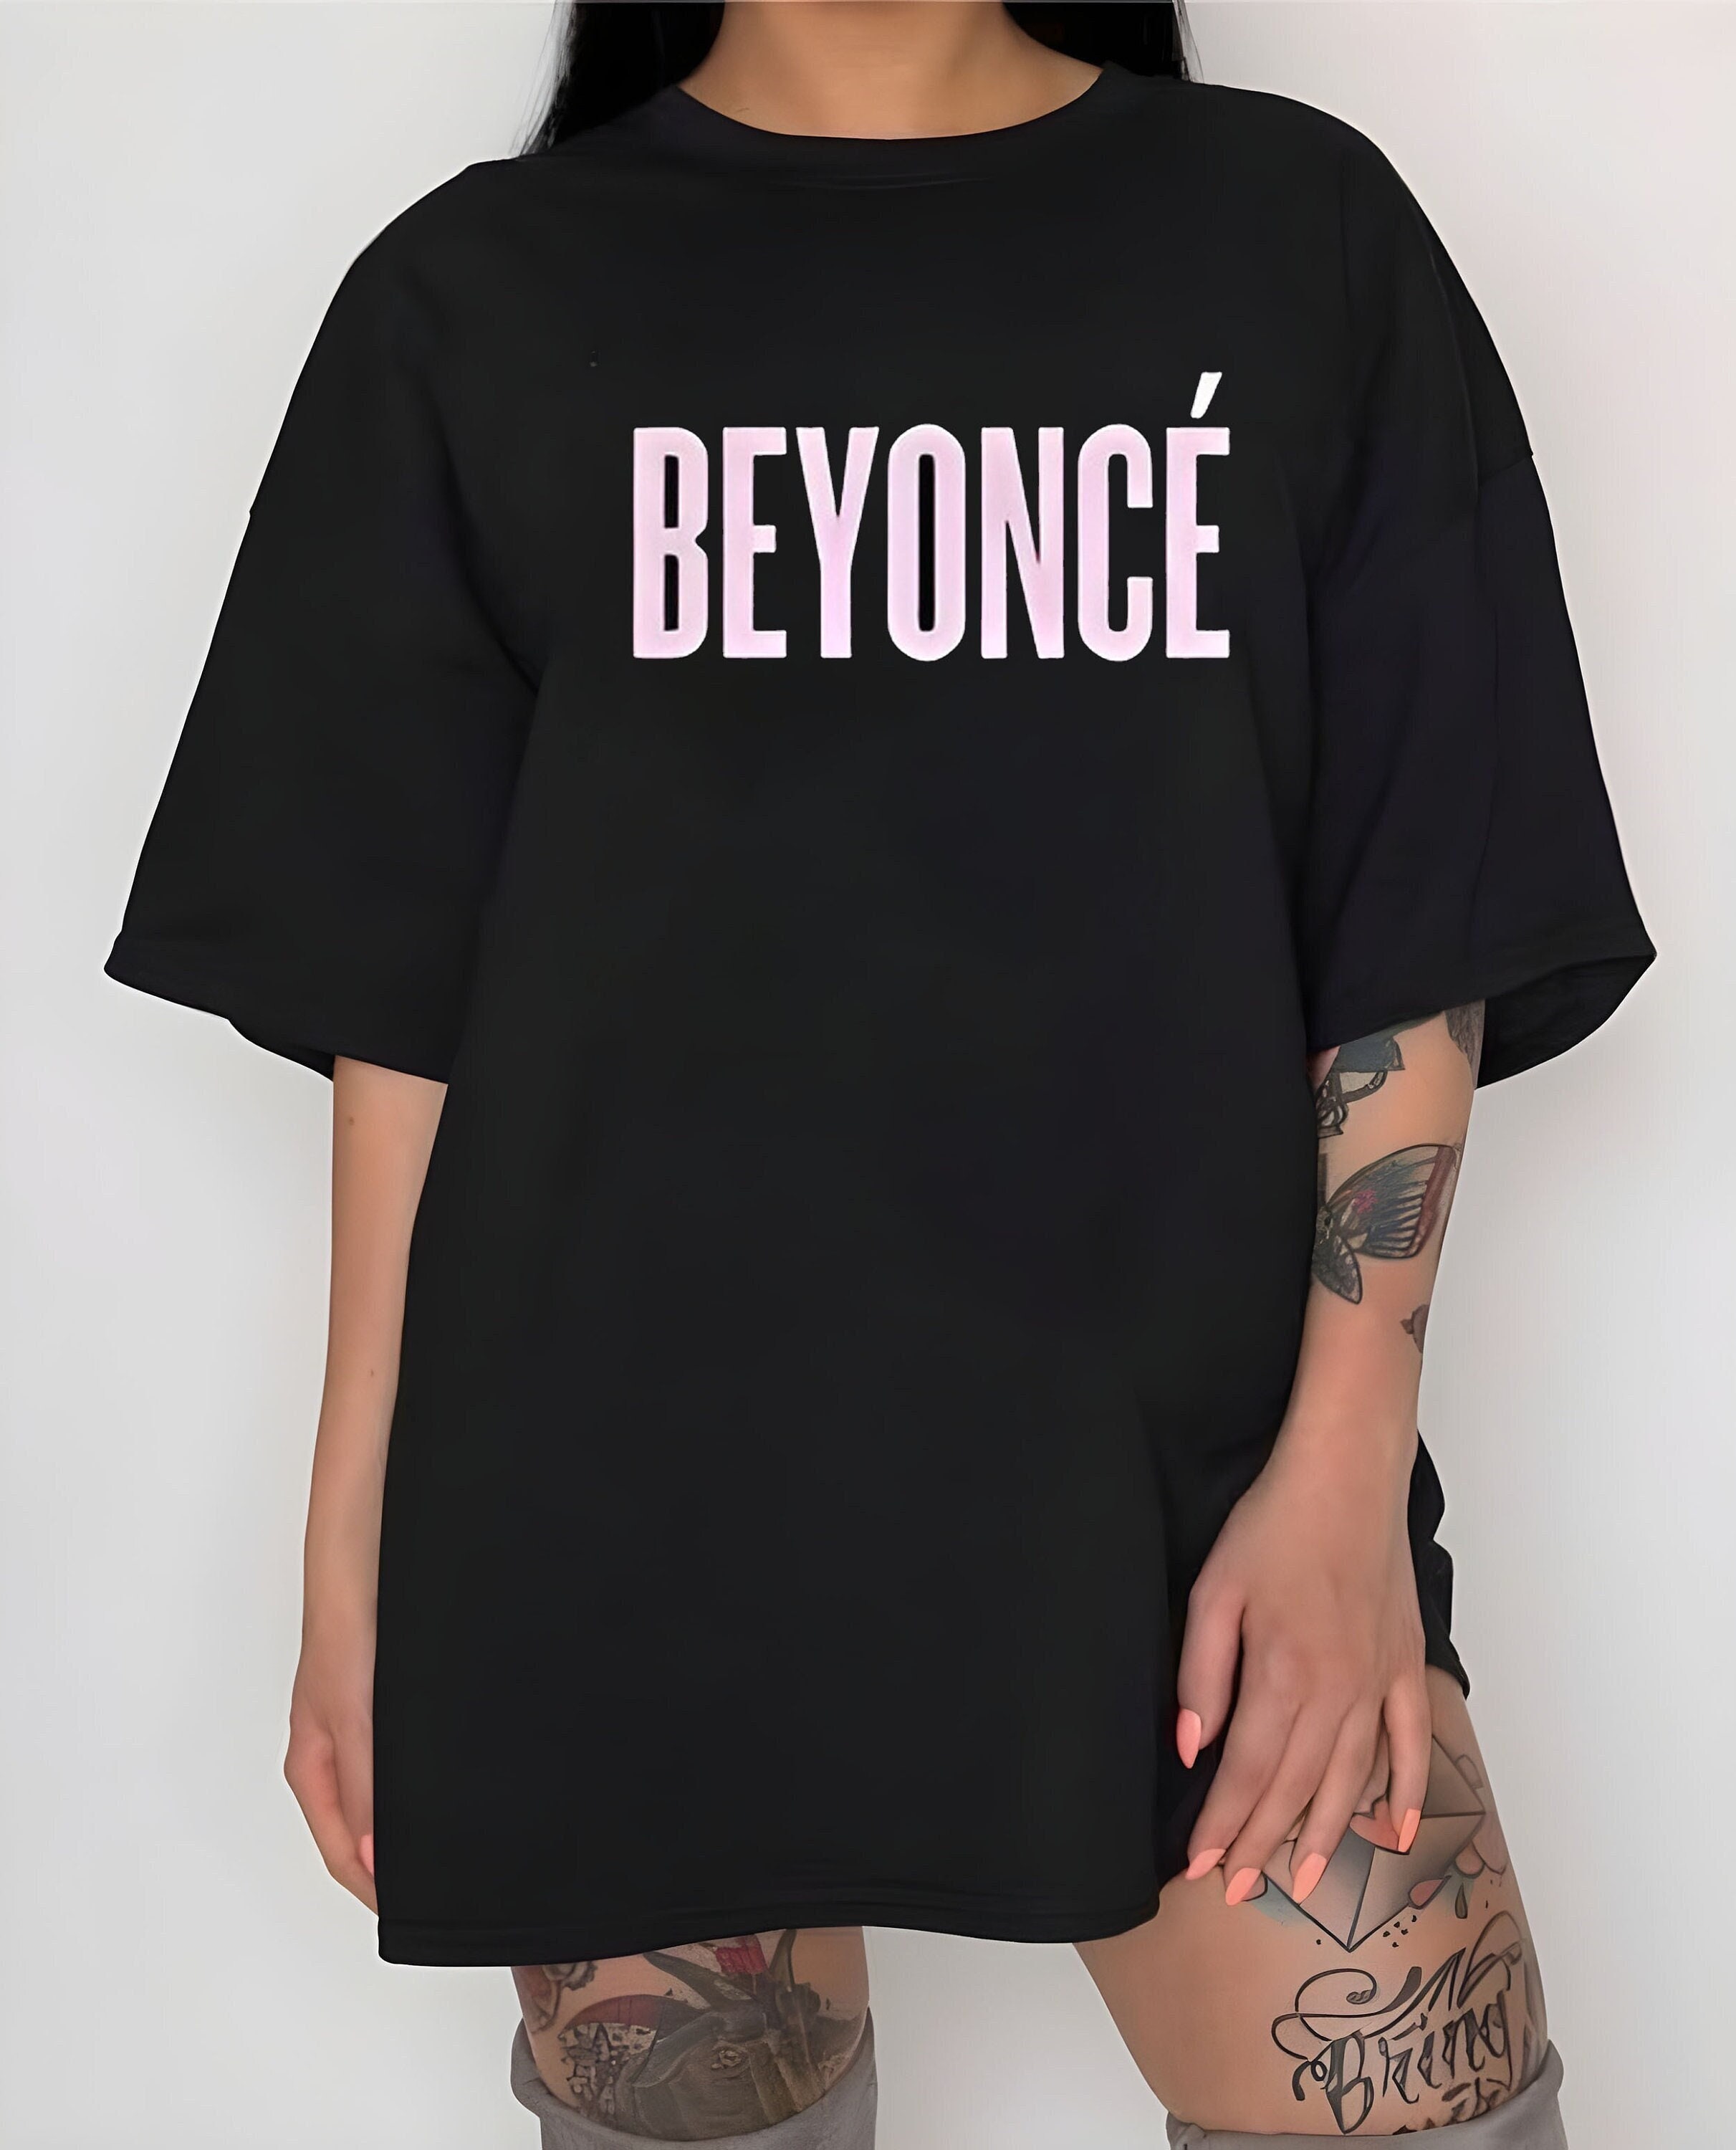 Beyonc T-shirt, Beyonce Tour 2023 T-shirt, Renaissance Tour Shirt, Beyonc 2023